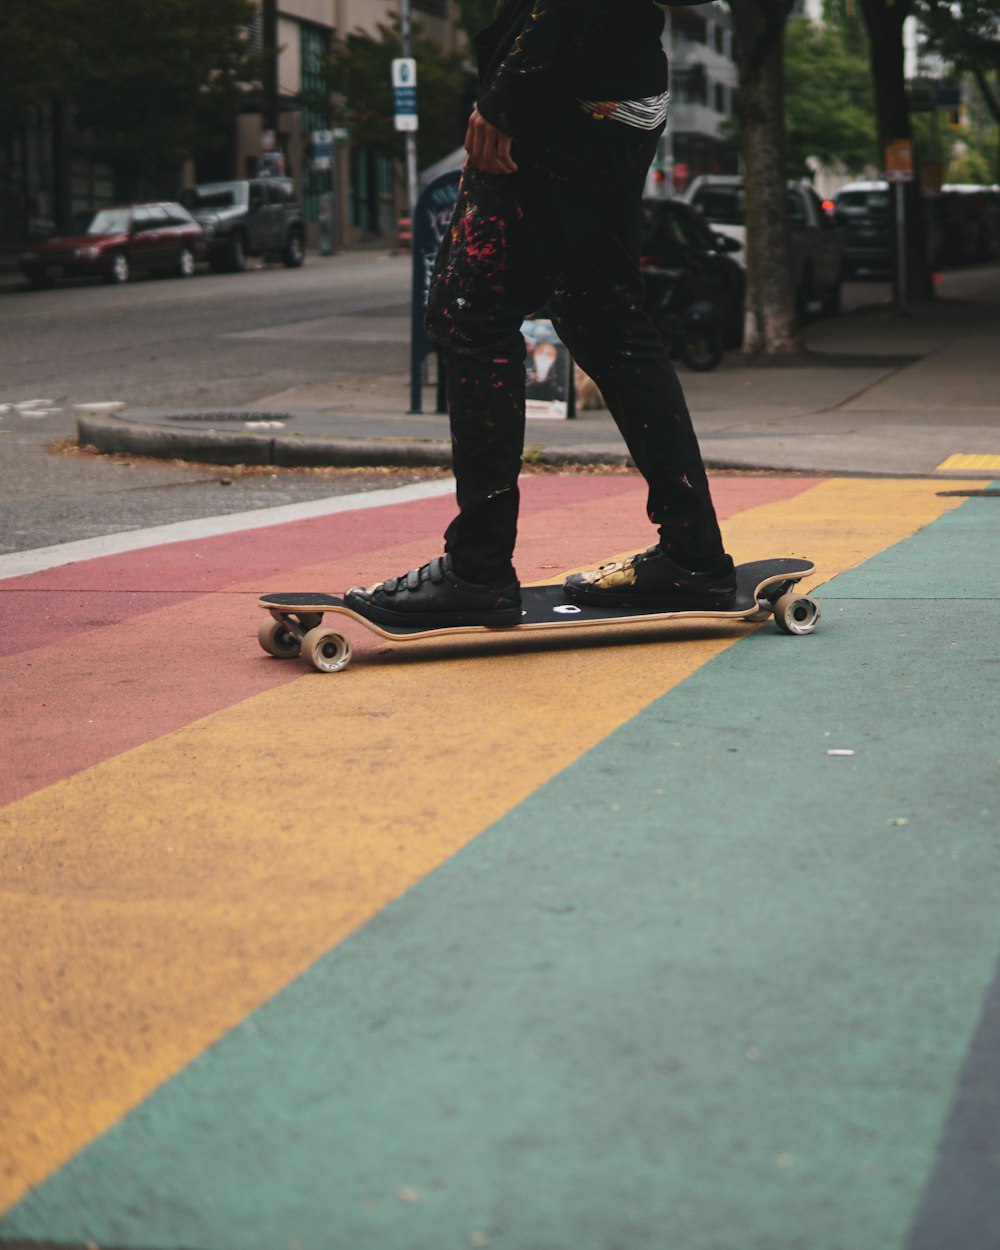 Mann in schwarzen Hosen und schwarzen Schuhen, der tagsüber auf dem Skateboard fährt